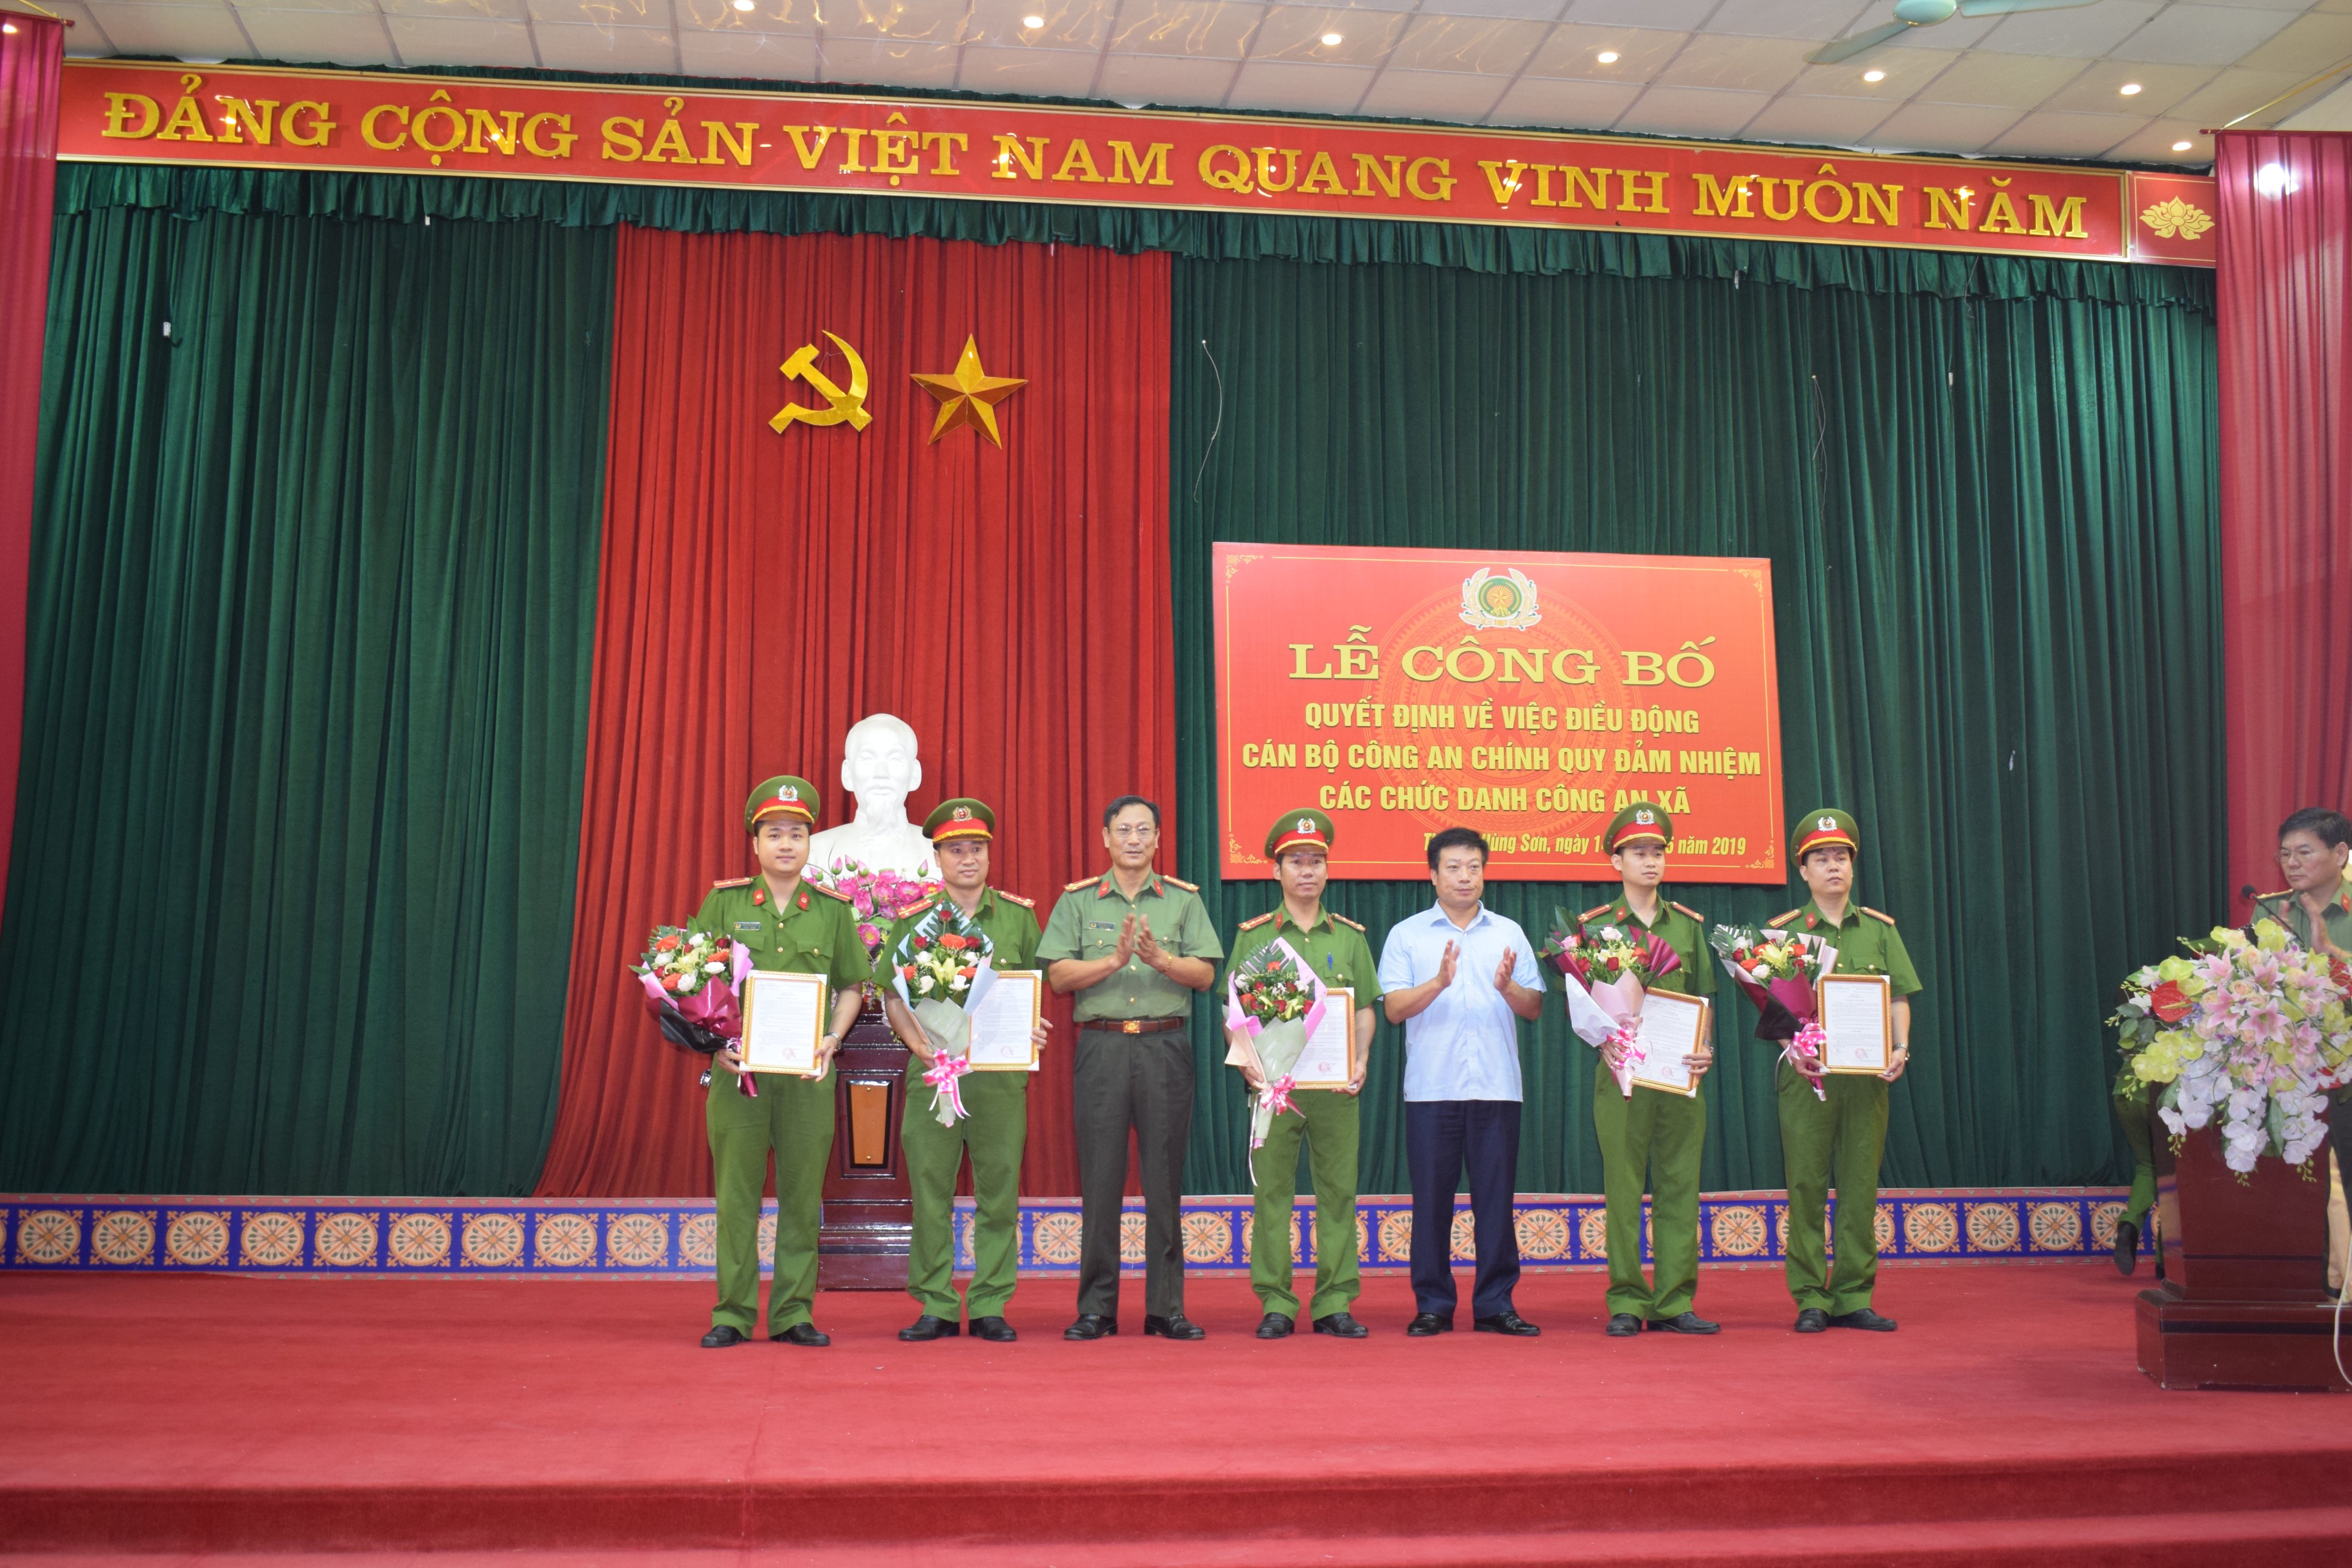 Lễ Công bố quyết định điều động Công an chính quy đảm nhiệm chức danh Công an xã tại thị trấn Hùng Sơn và xã Yên Lãng